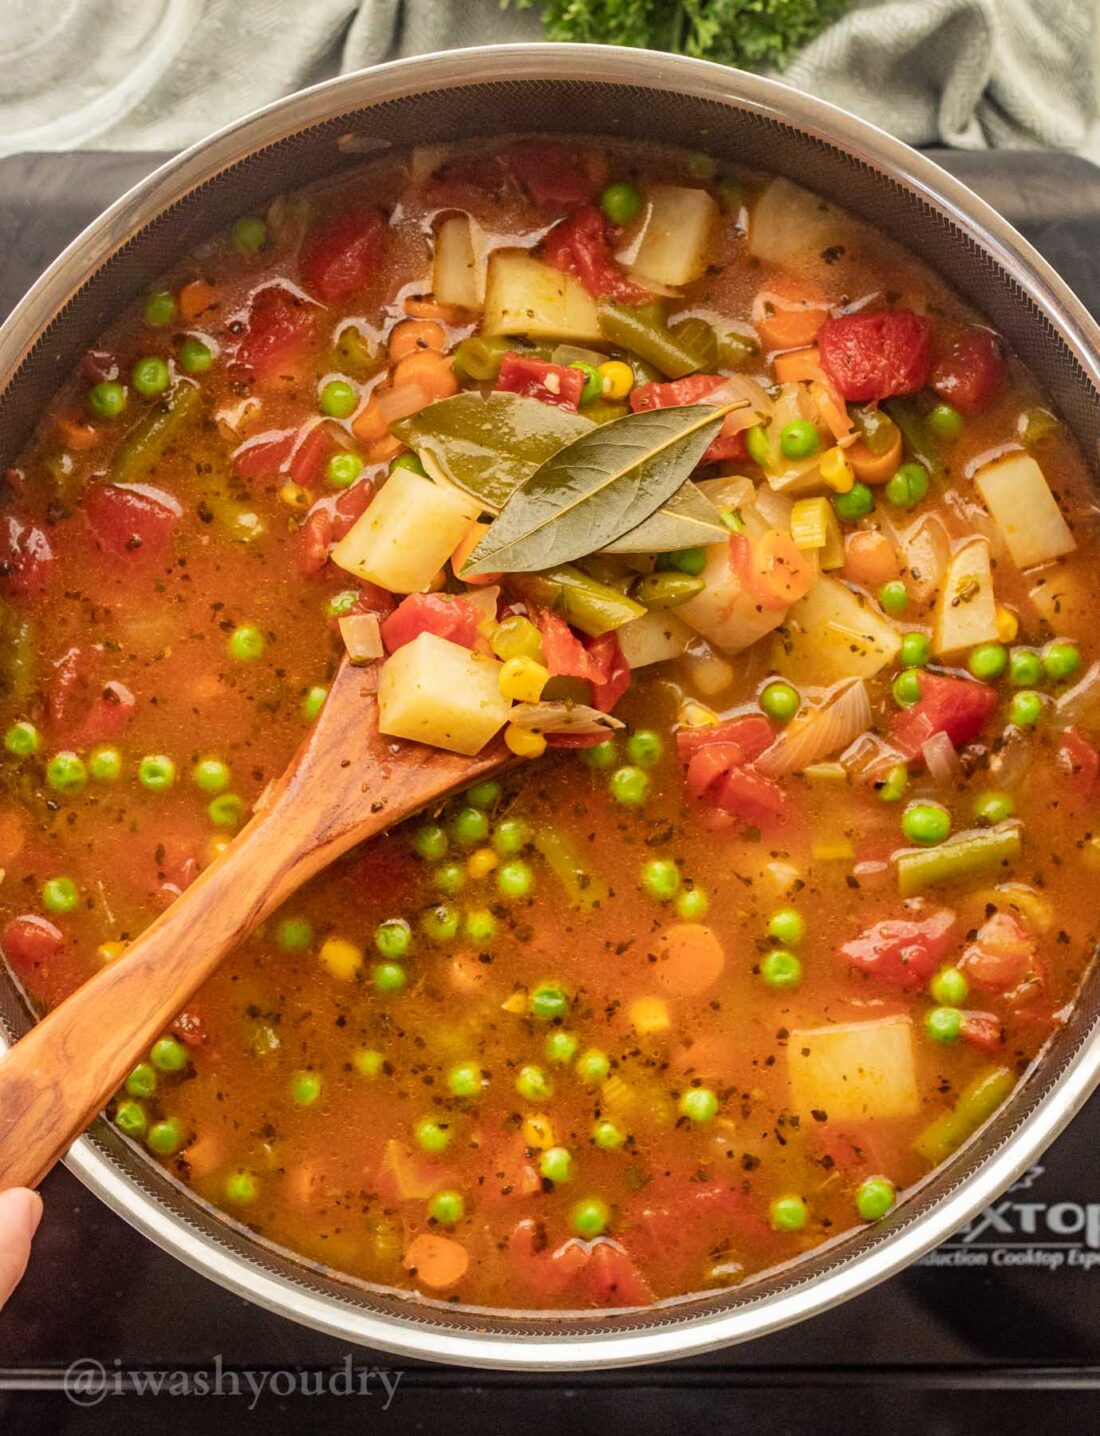 Crock Pot Vegetable Soup - The Seasoned Mom